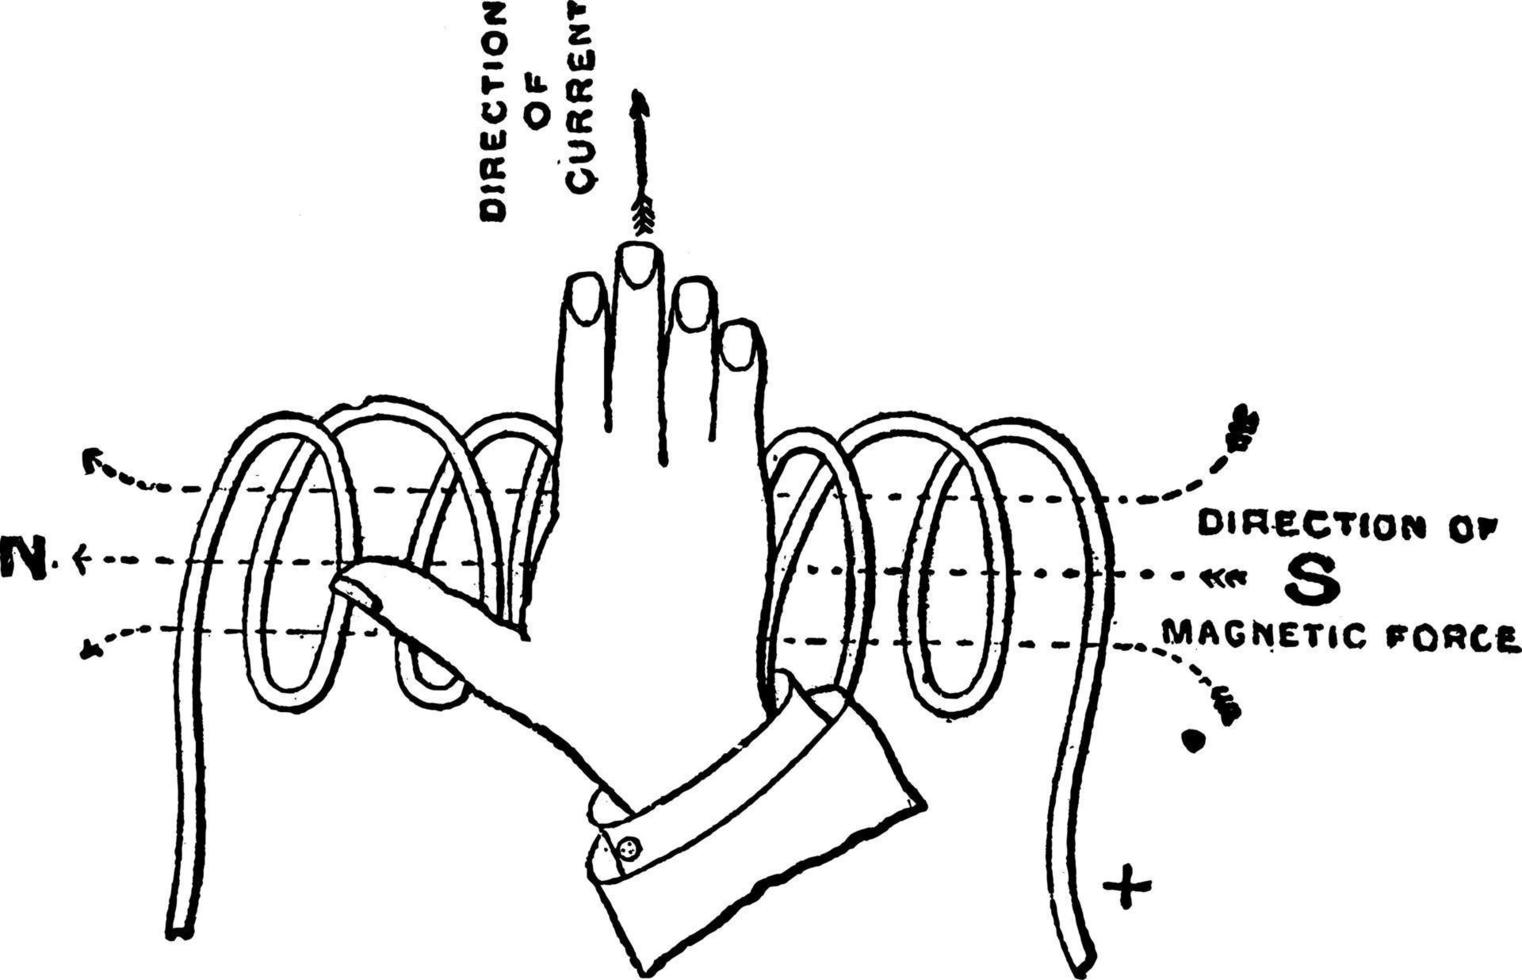 regla de la mano derecha, solenoide o regla de la mano derecha para la polaridad de un solenoide, ilustración antigua. vector